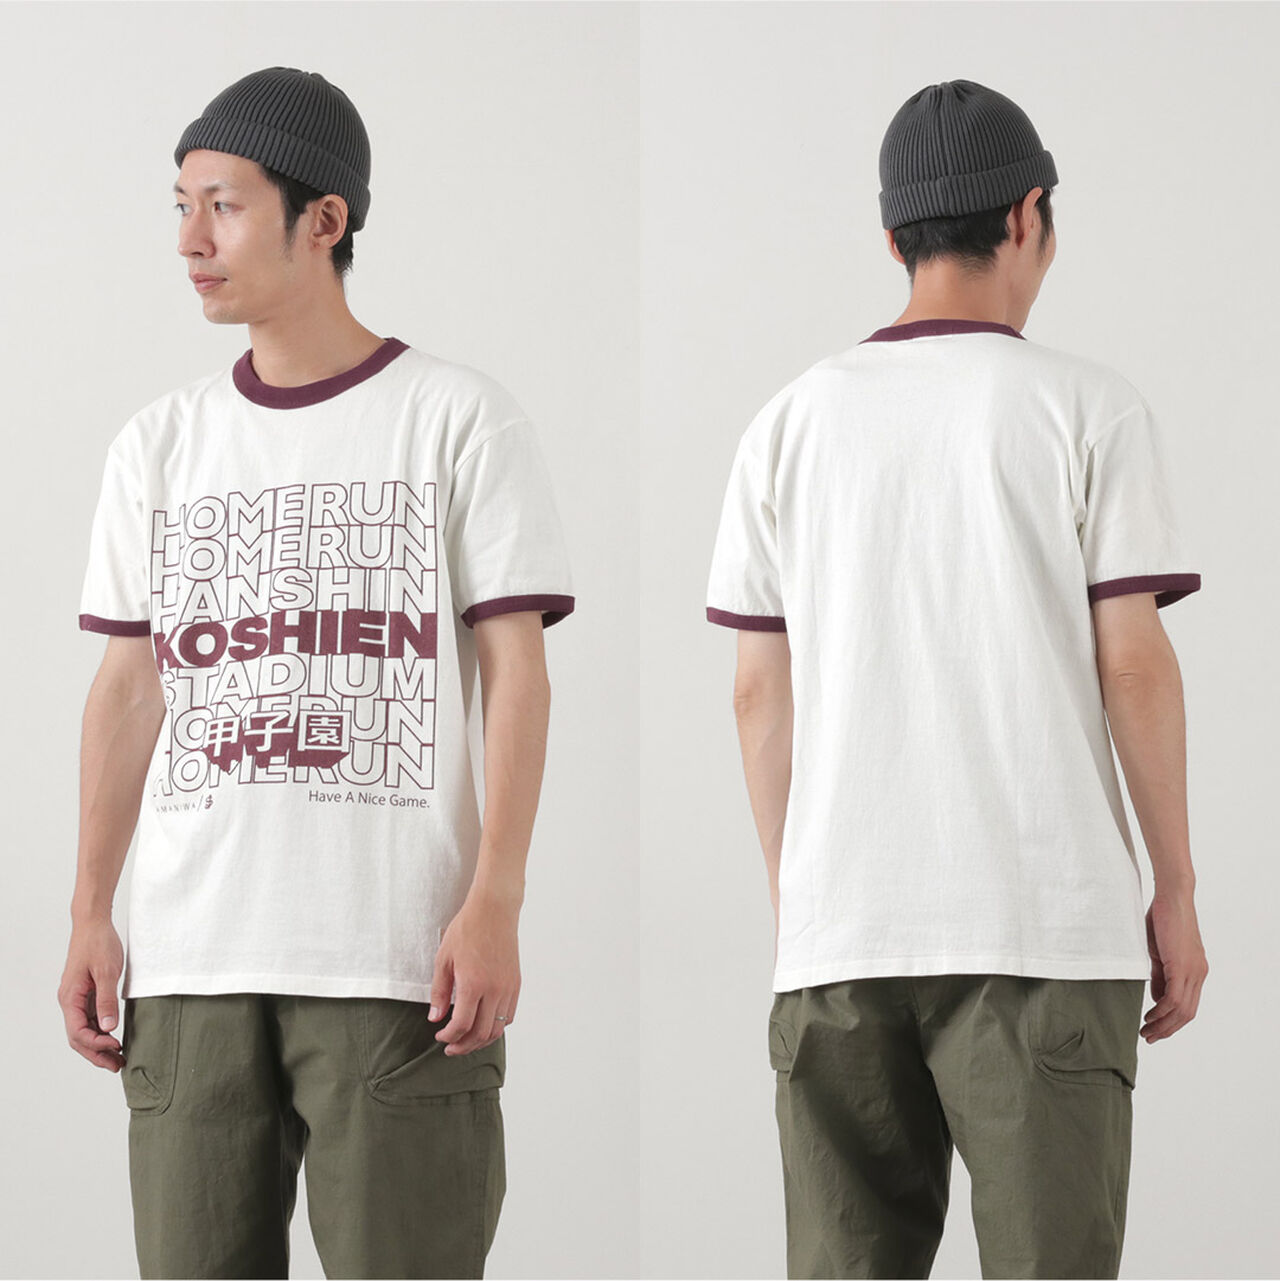 Koshien Home Run T-shirt,, large image number 11